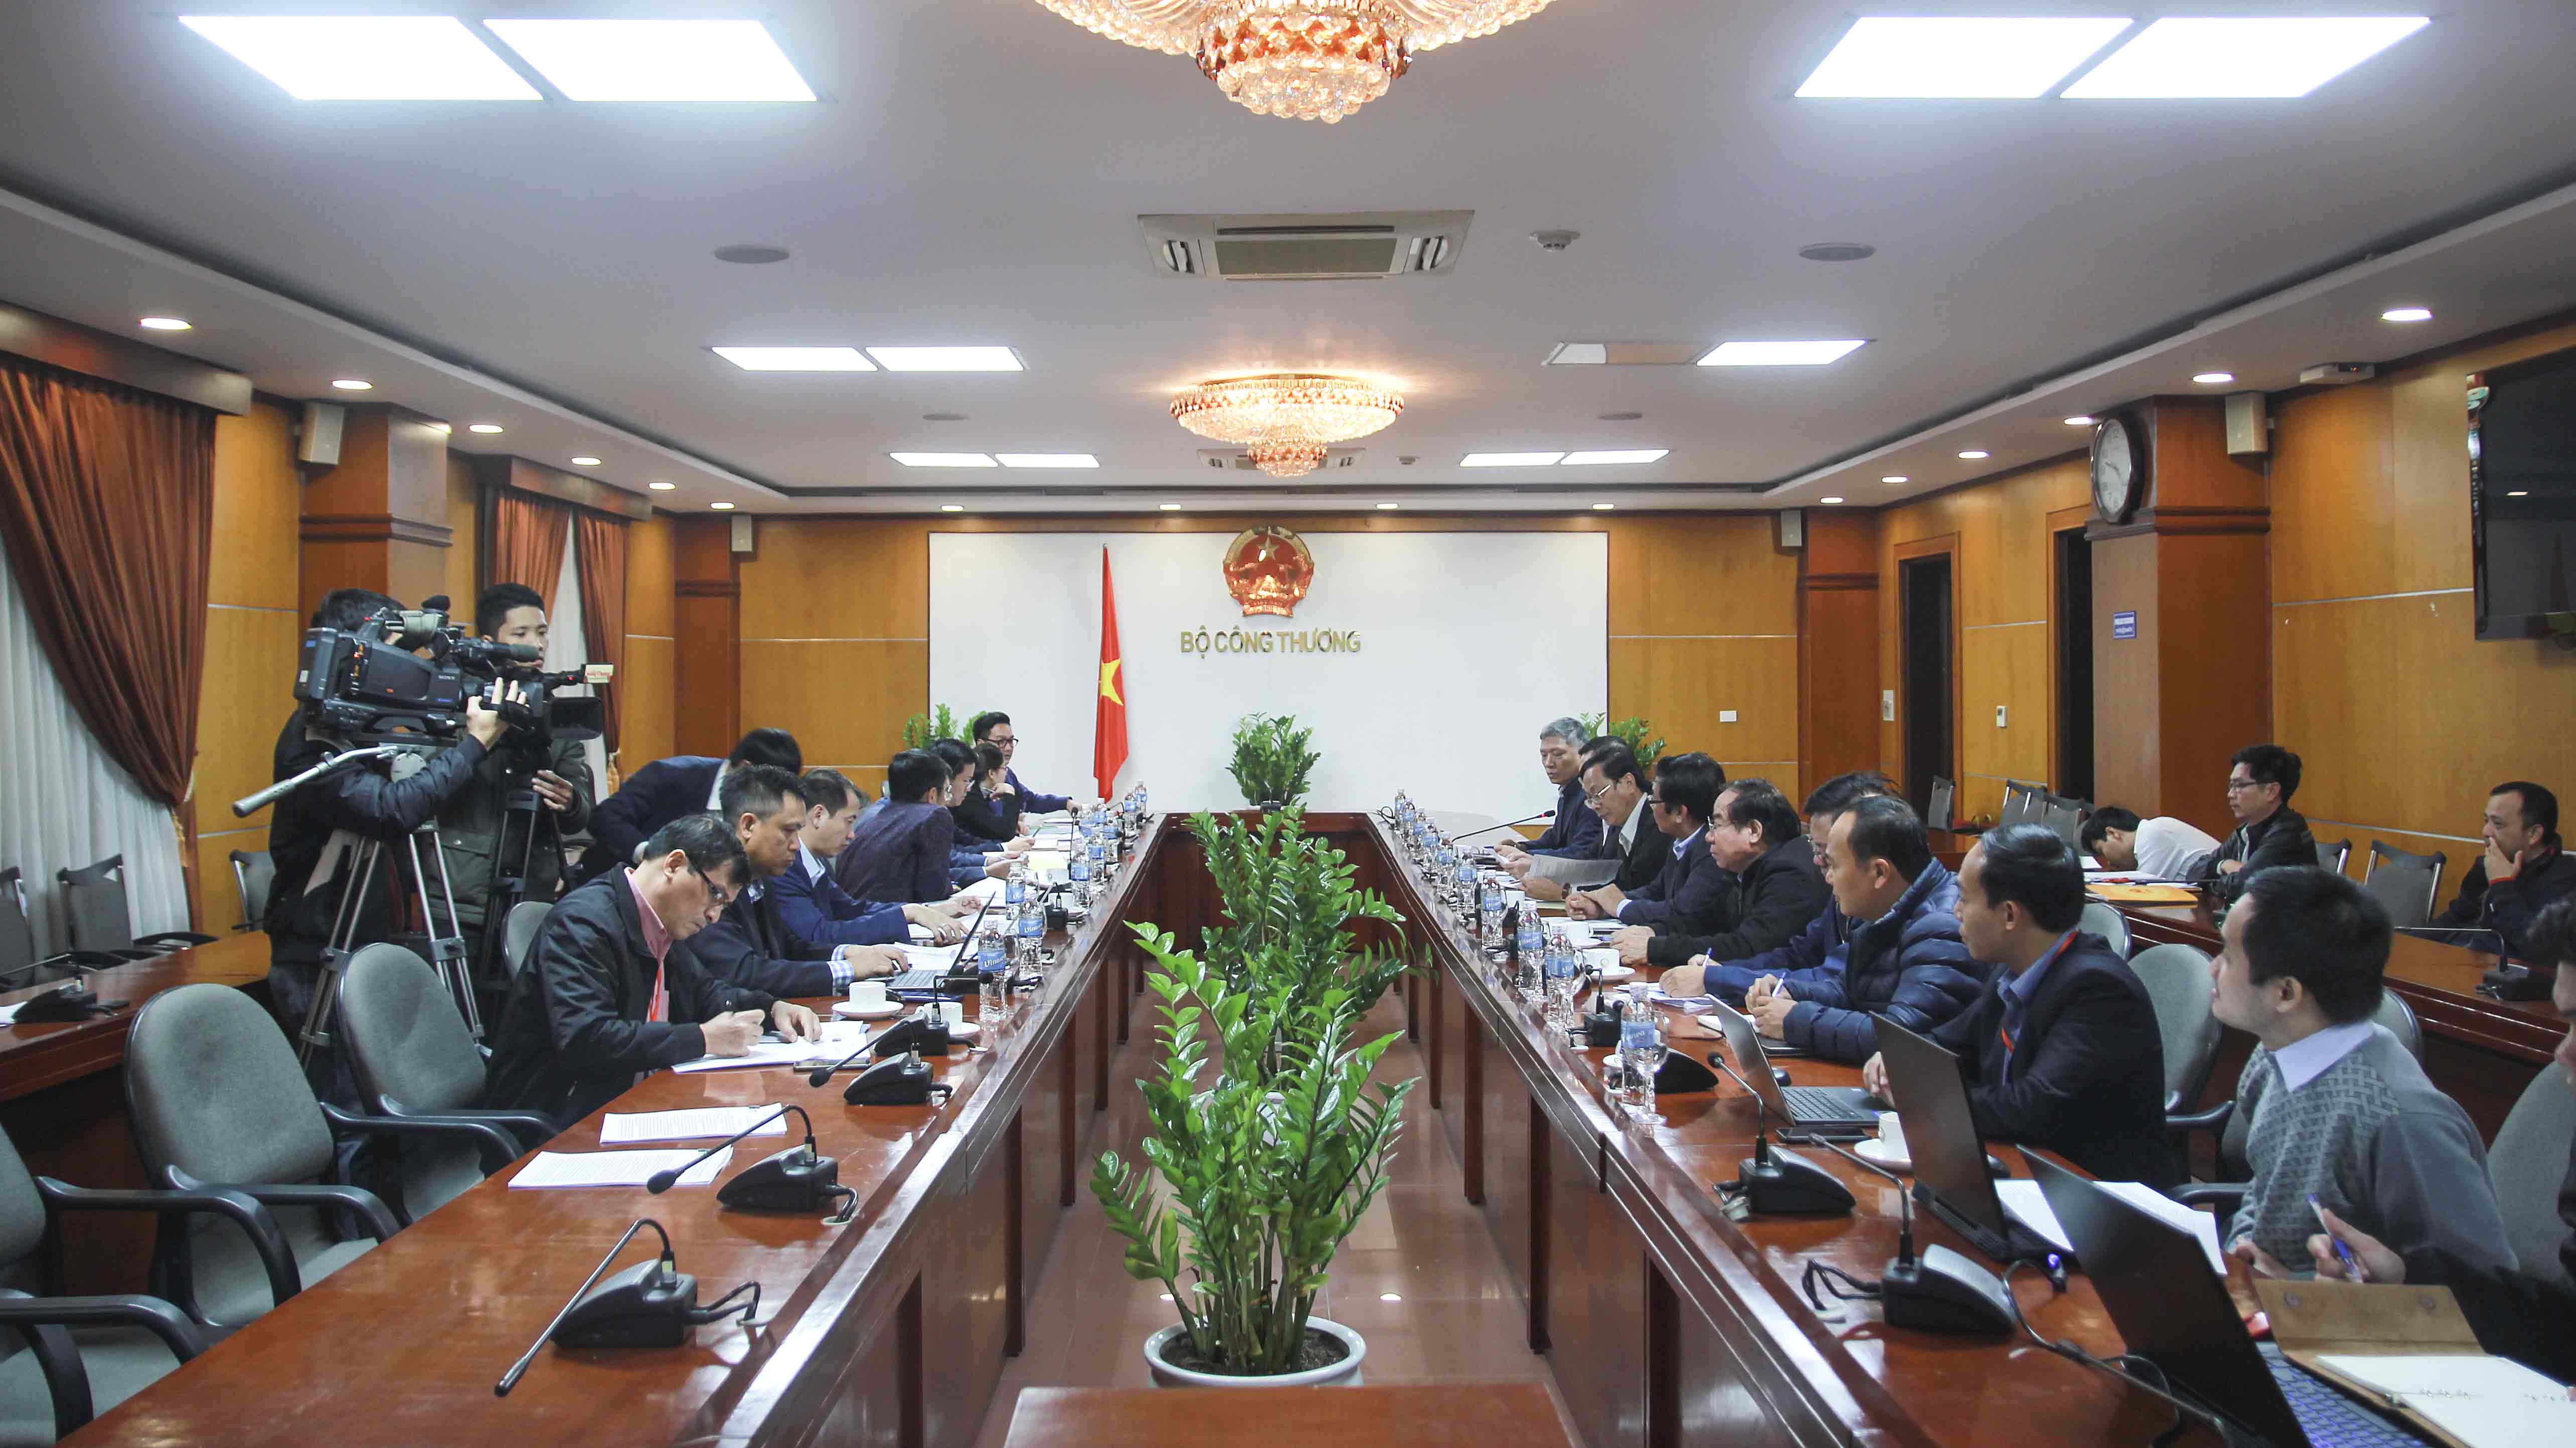 Toàn cảnh buổi làm việc giữa Bộ Công Thương và tỉnh Ninh Thuận ngày 11/12/2018